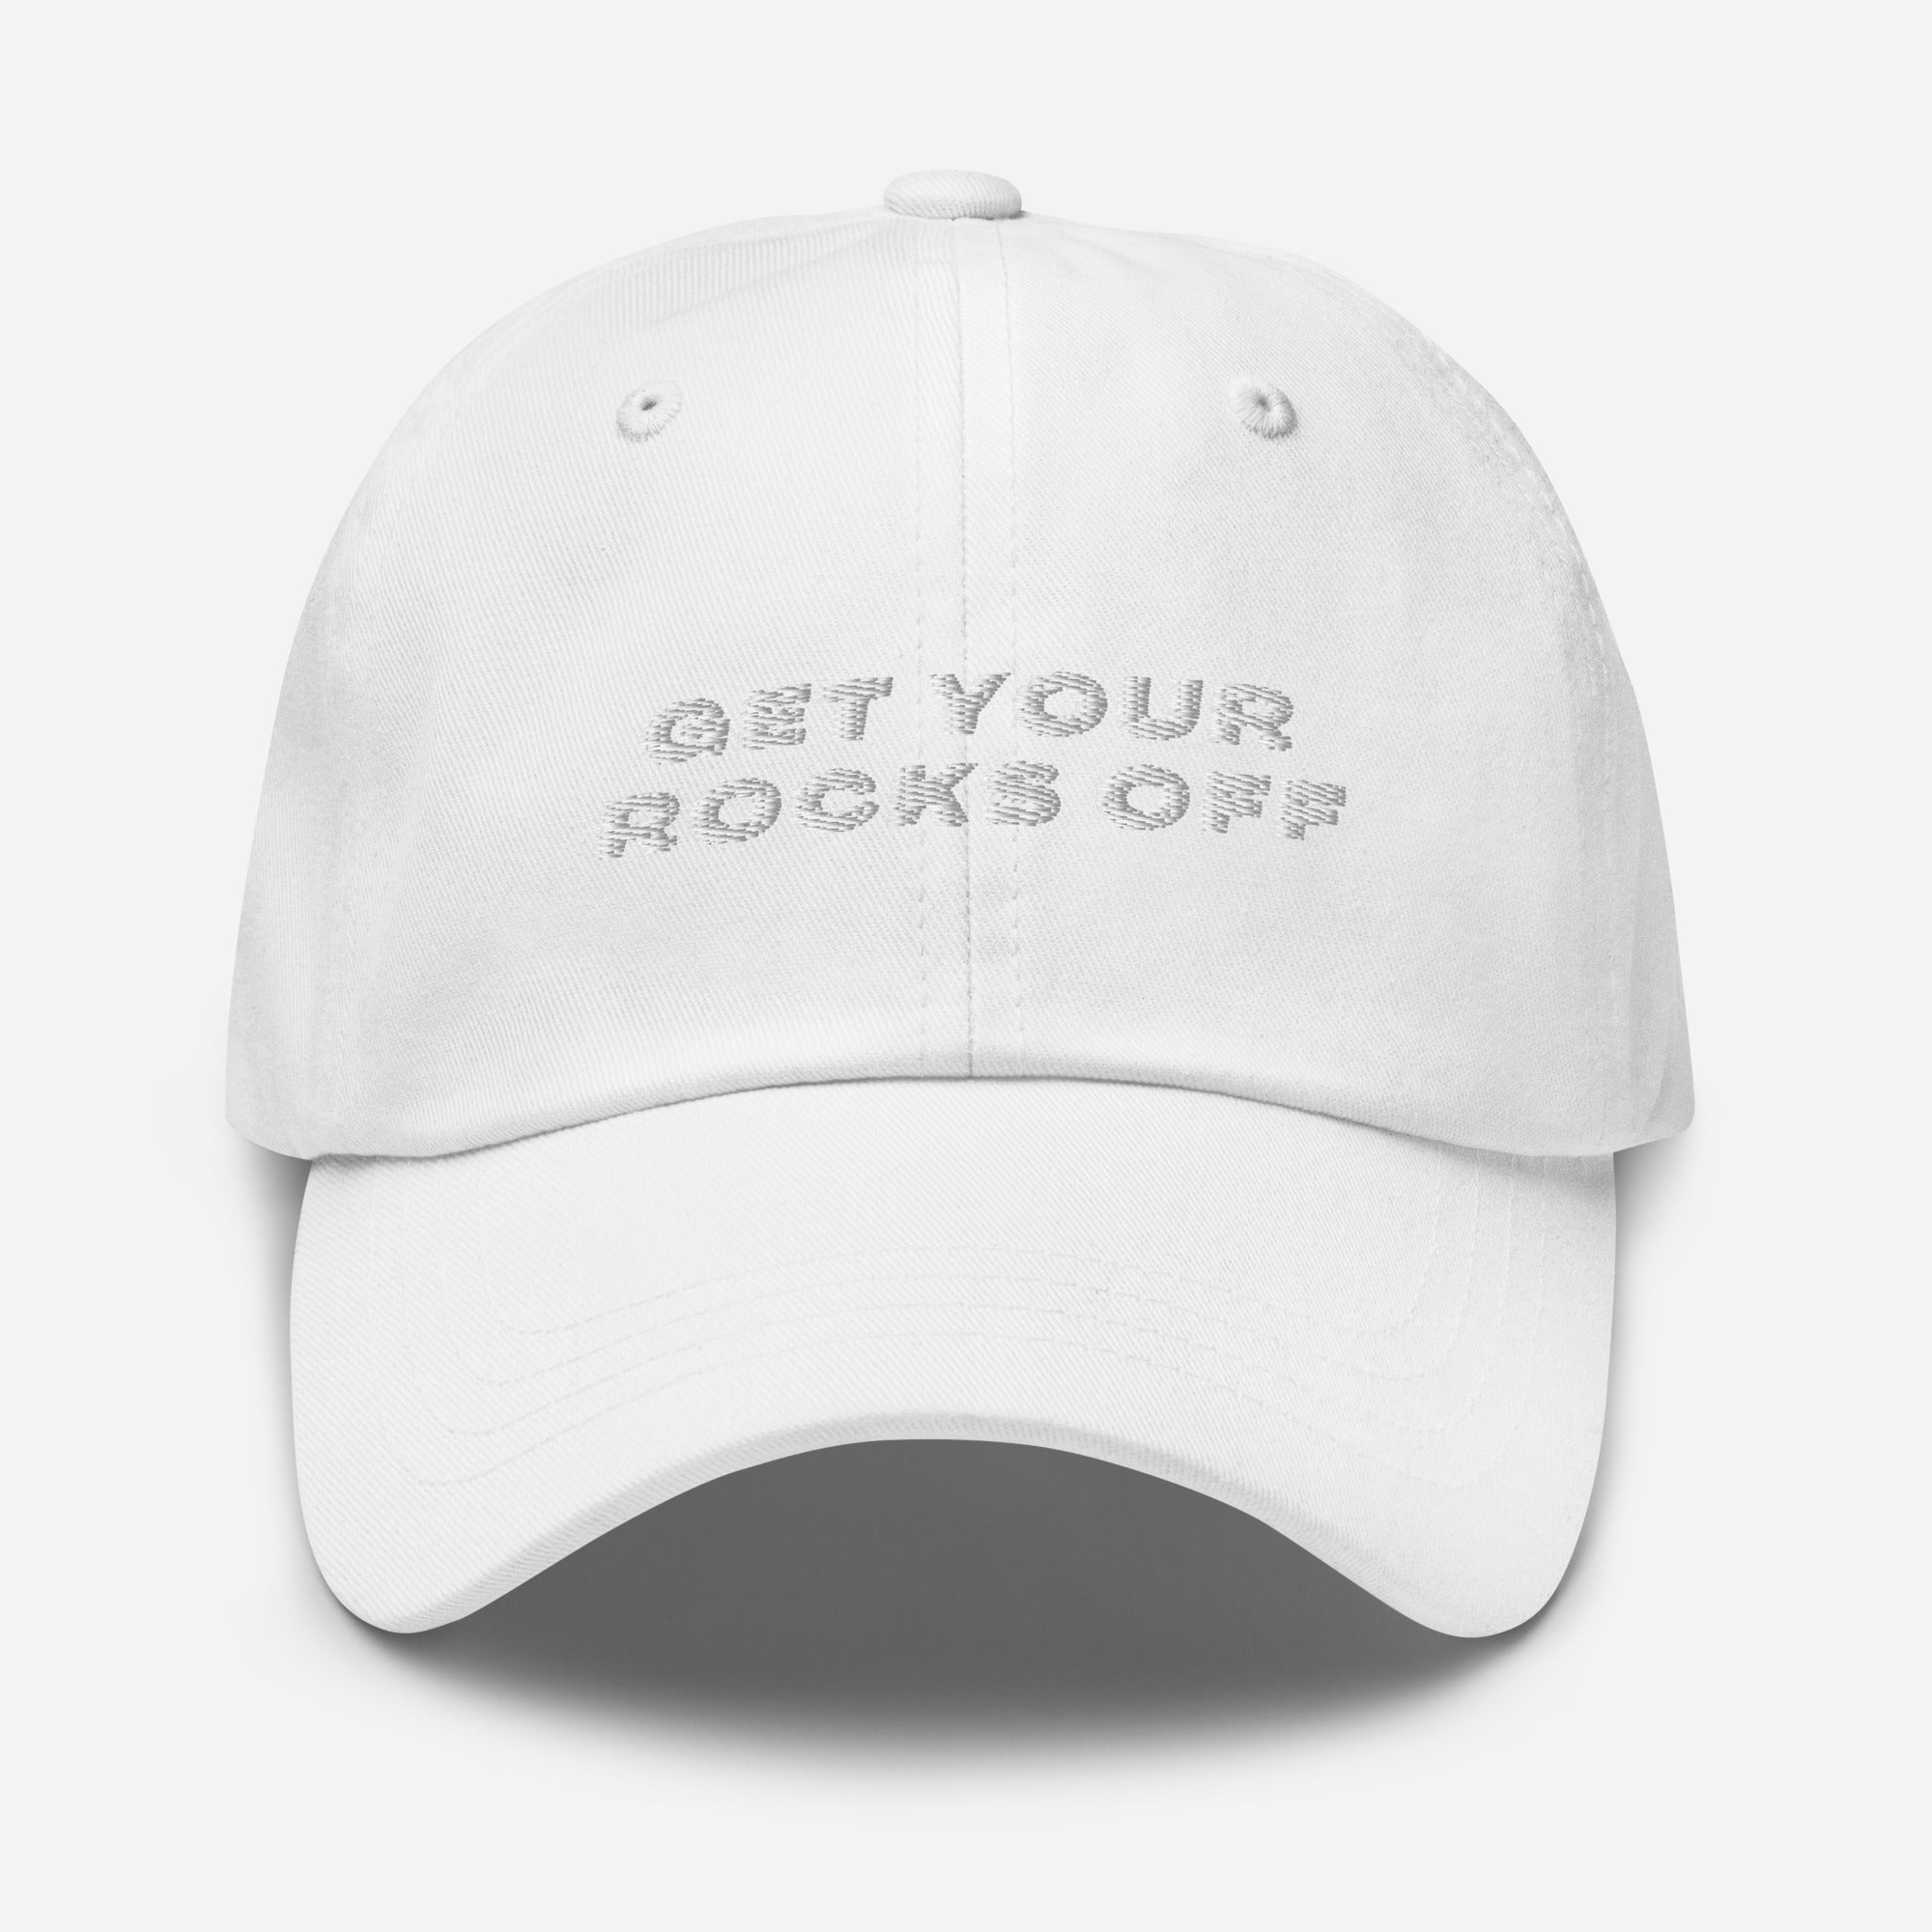 Get Your Rocks Off Cap